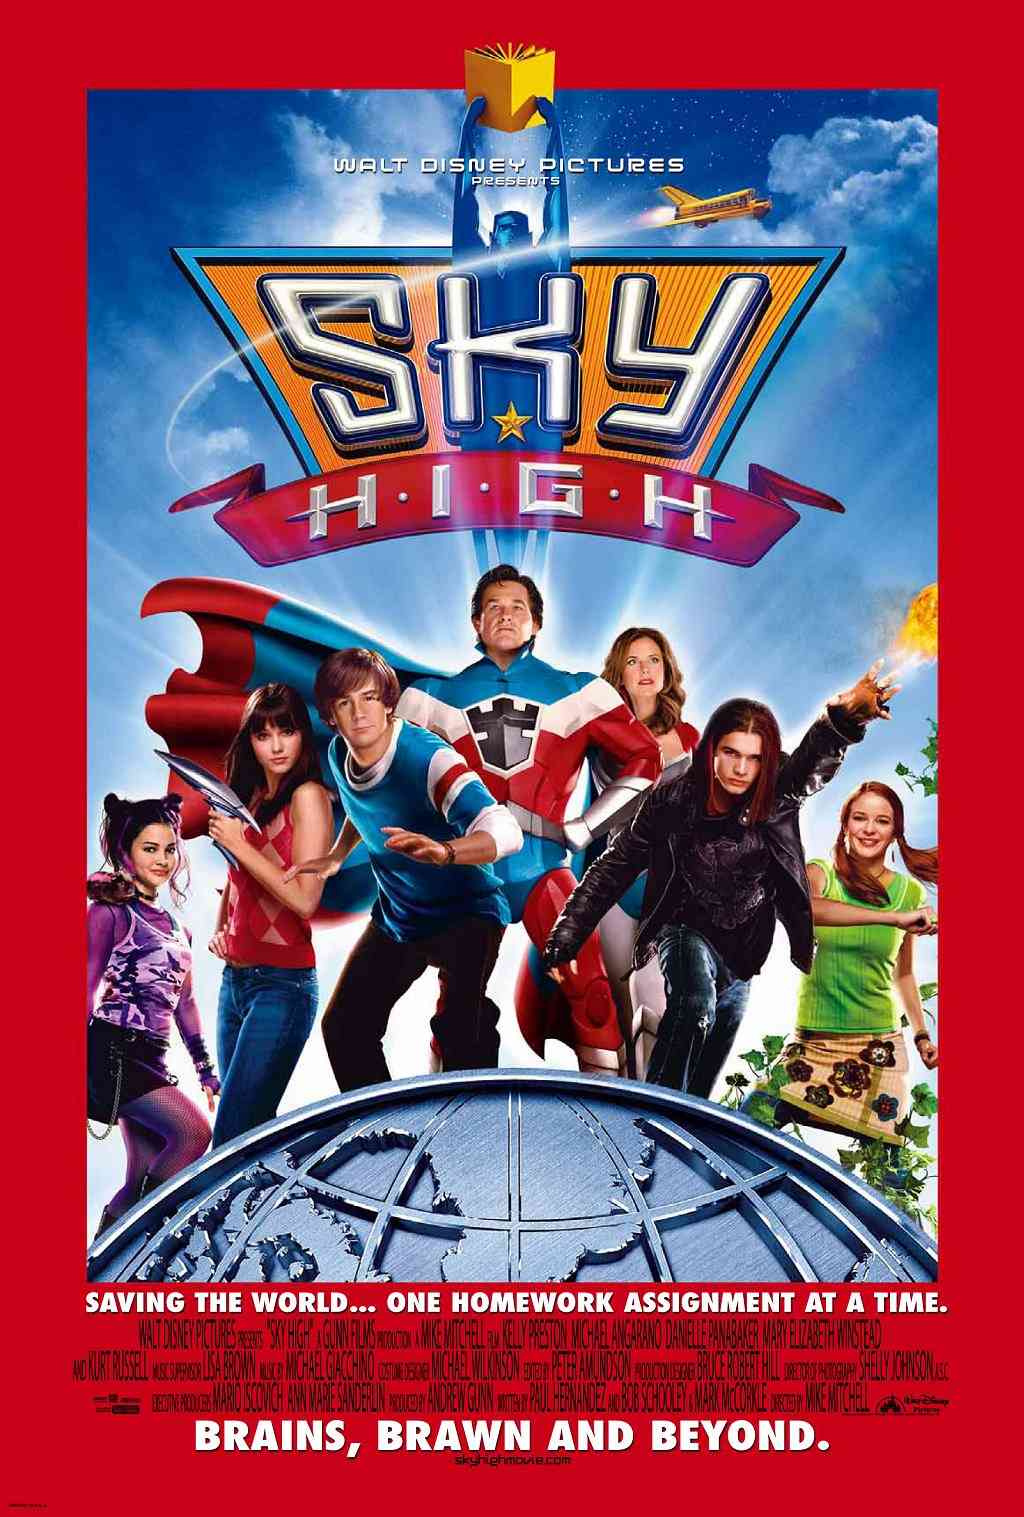 FULL MOVIE: Sky High (2005)